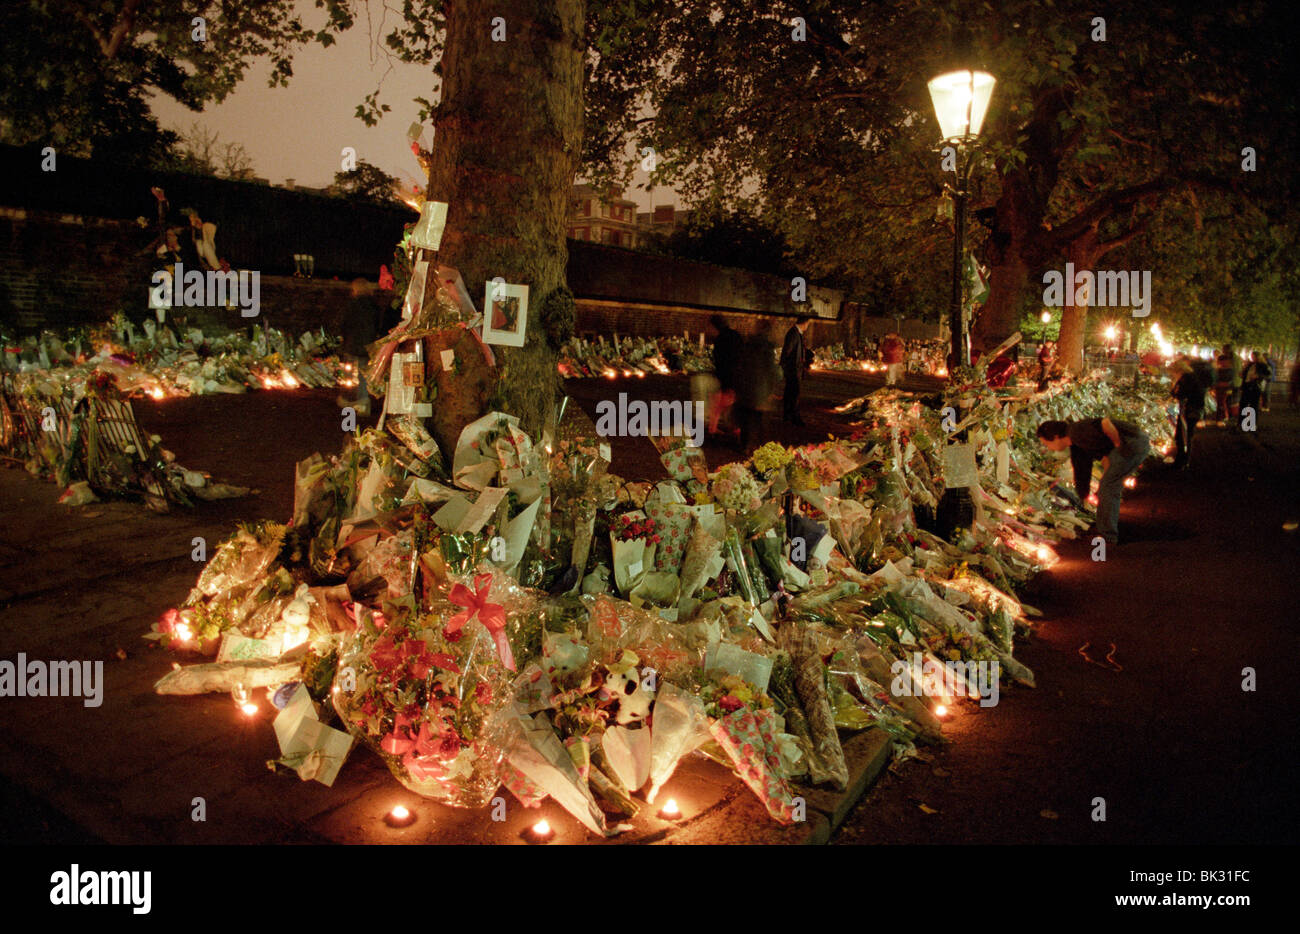 La muerte de la princesa Diana. Flores y homenajes en el Mall, cerca de St James Palace, Londres, Gran Bretaña. Foto de stock